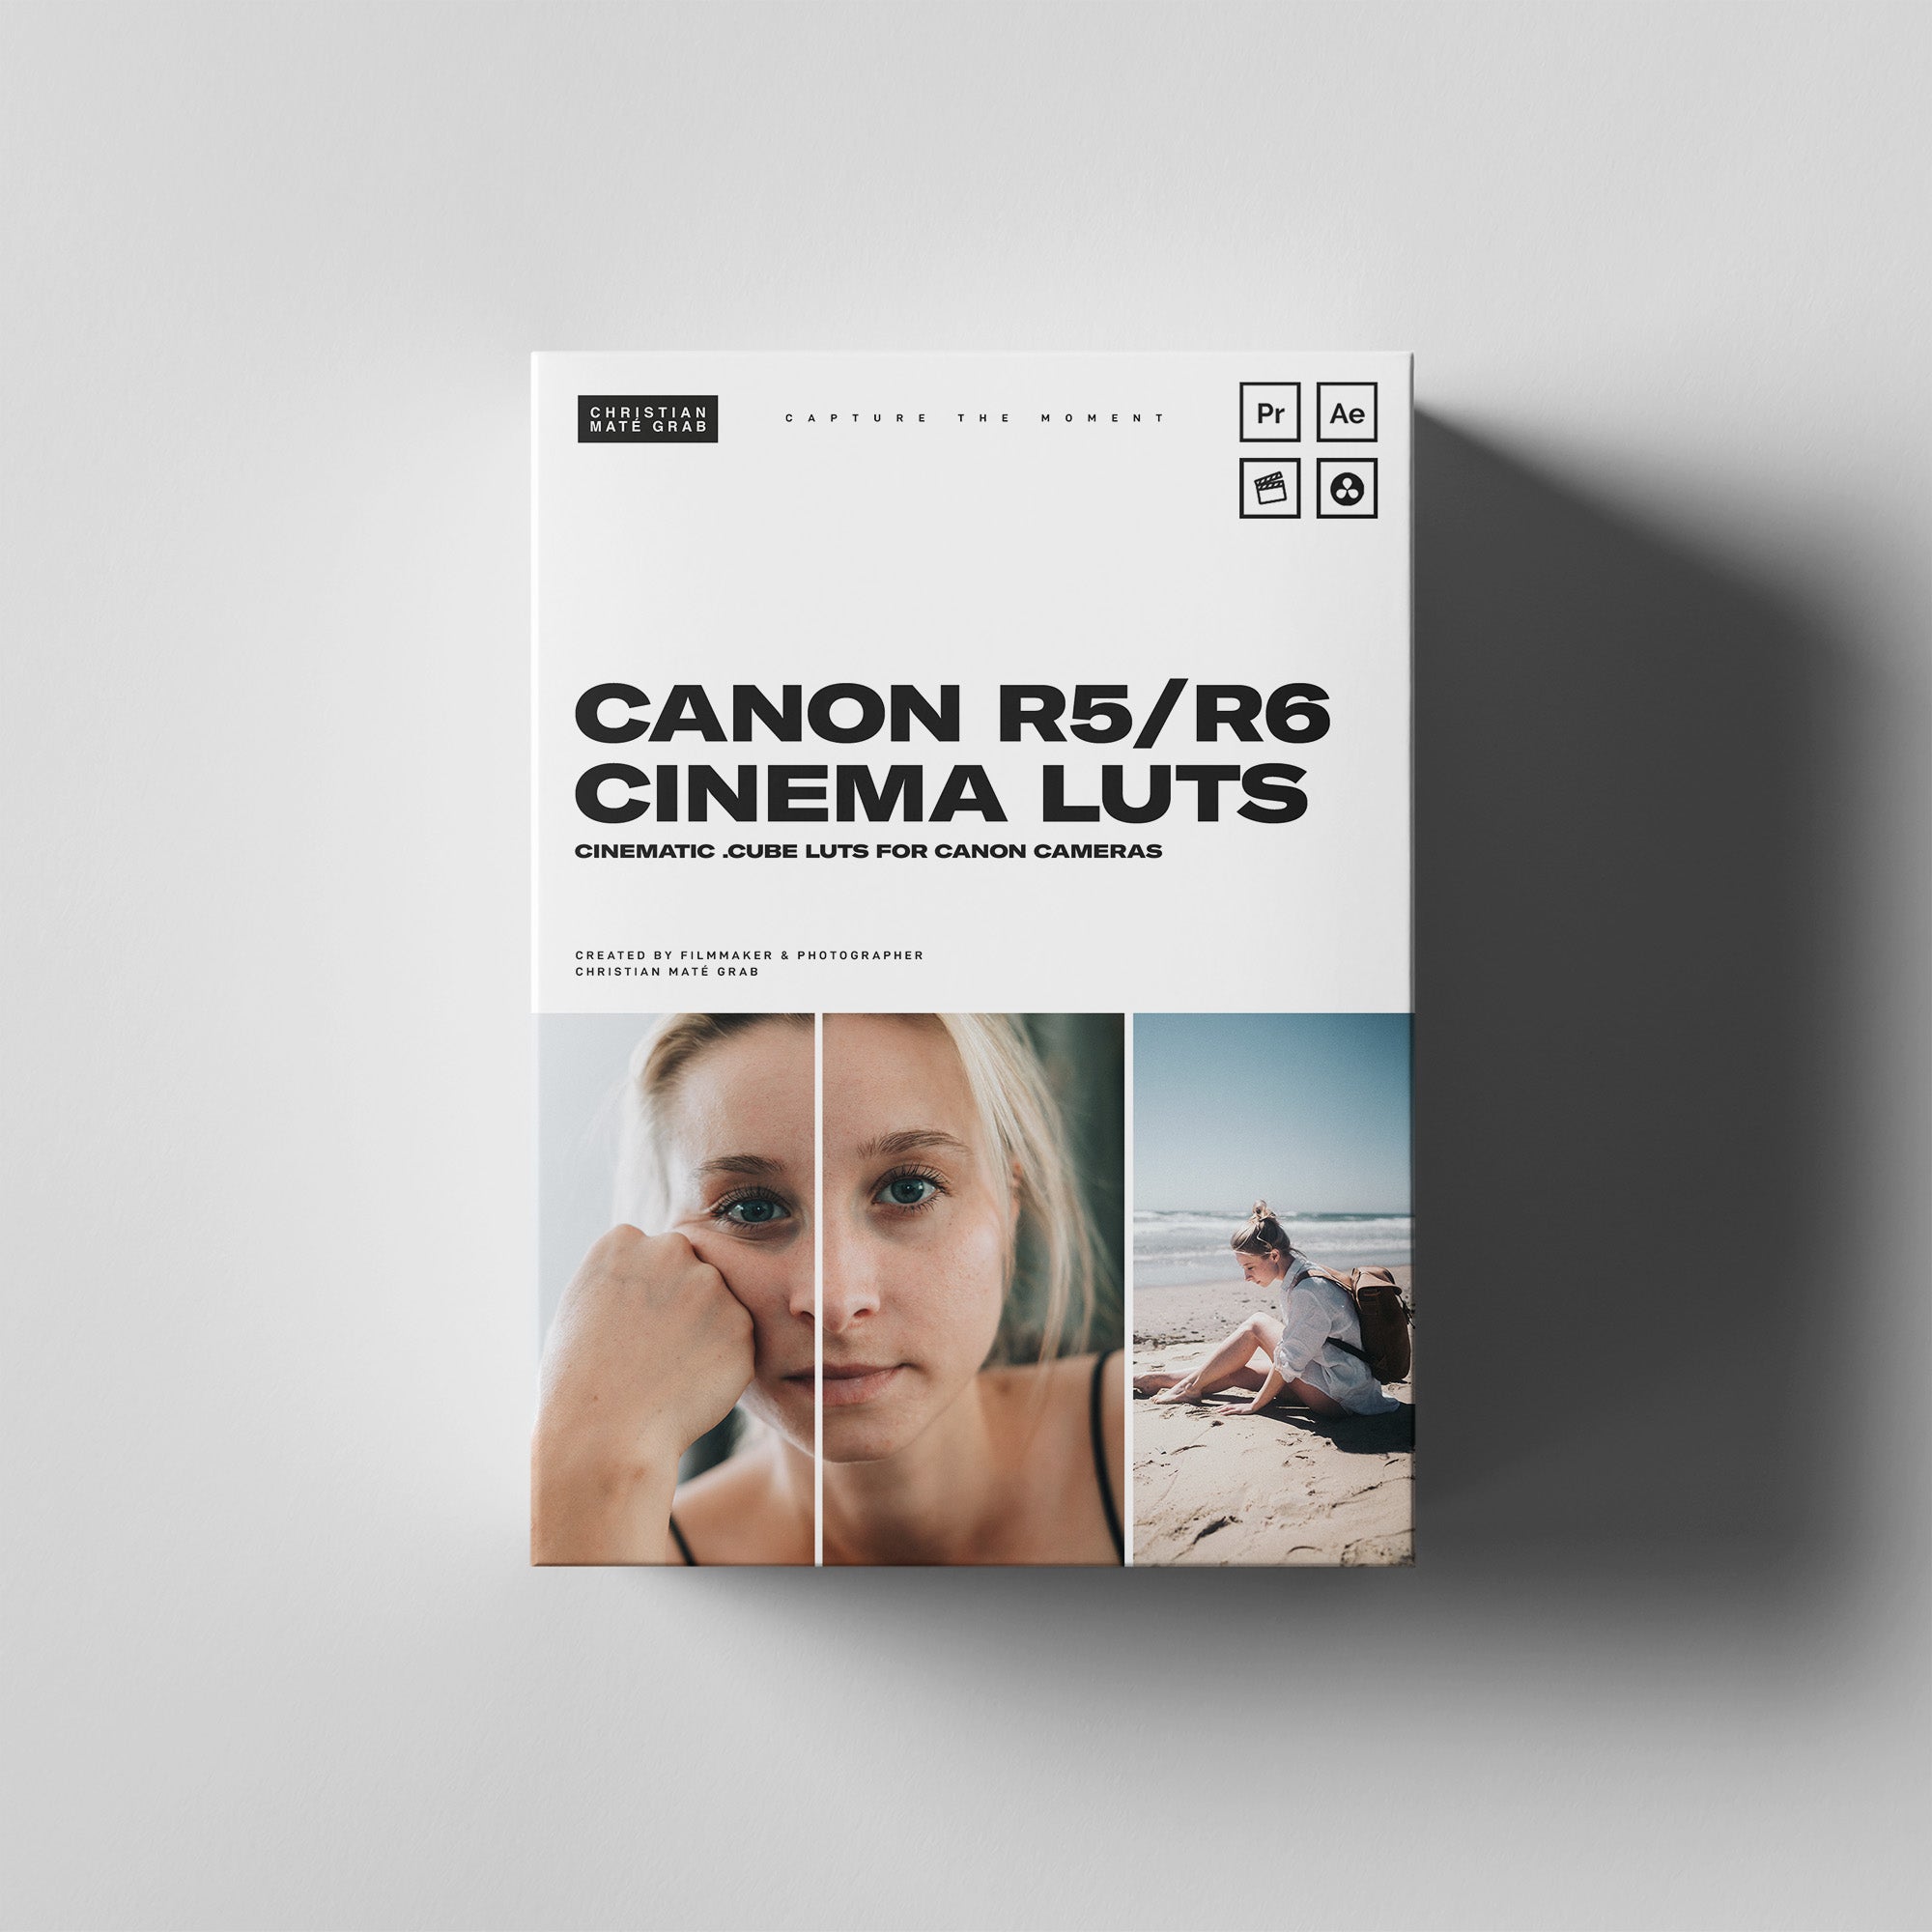 Canon R5 / R6 Cinema LUTs